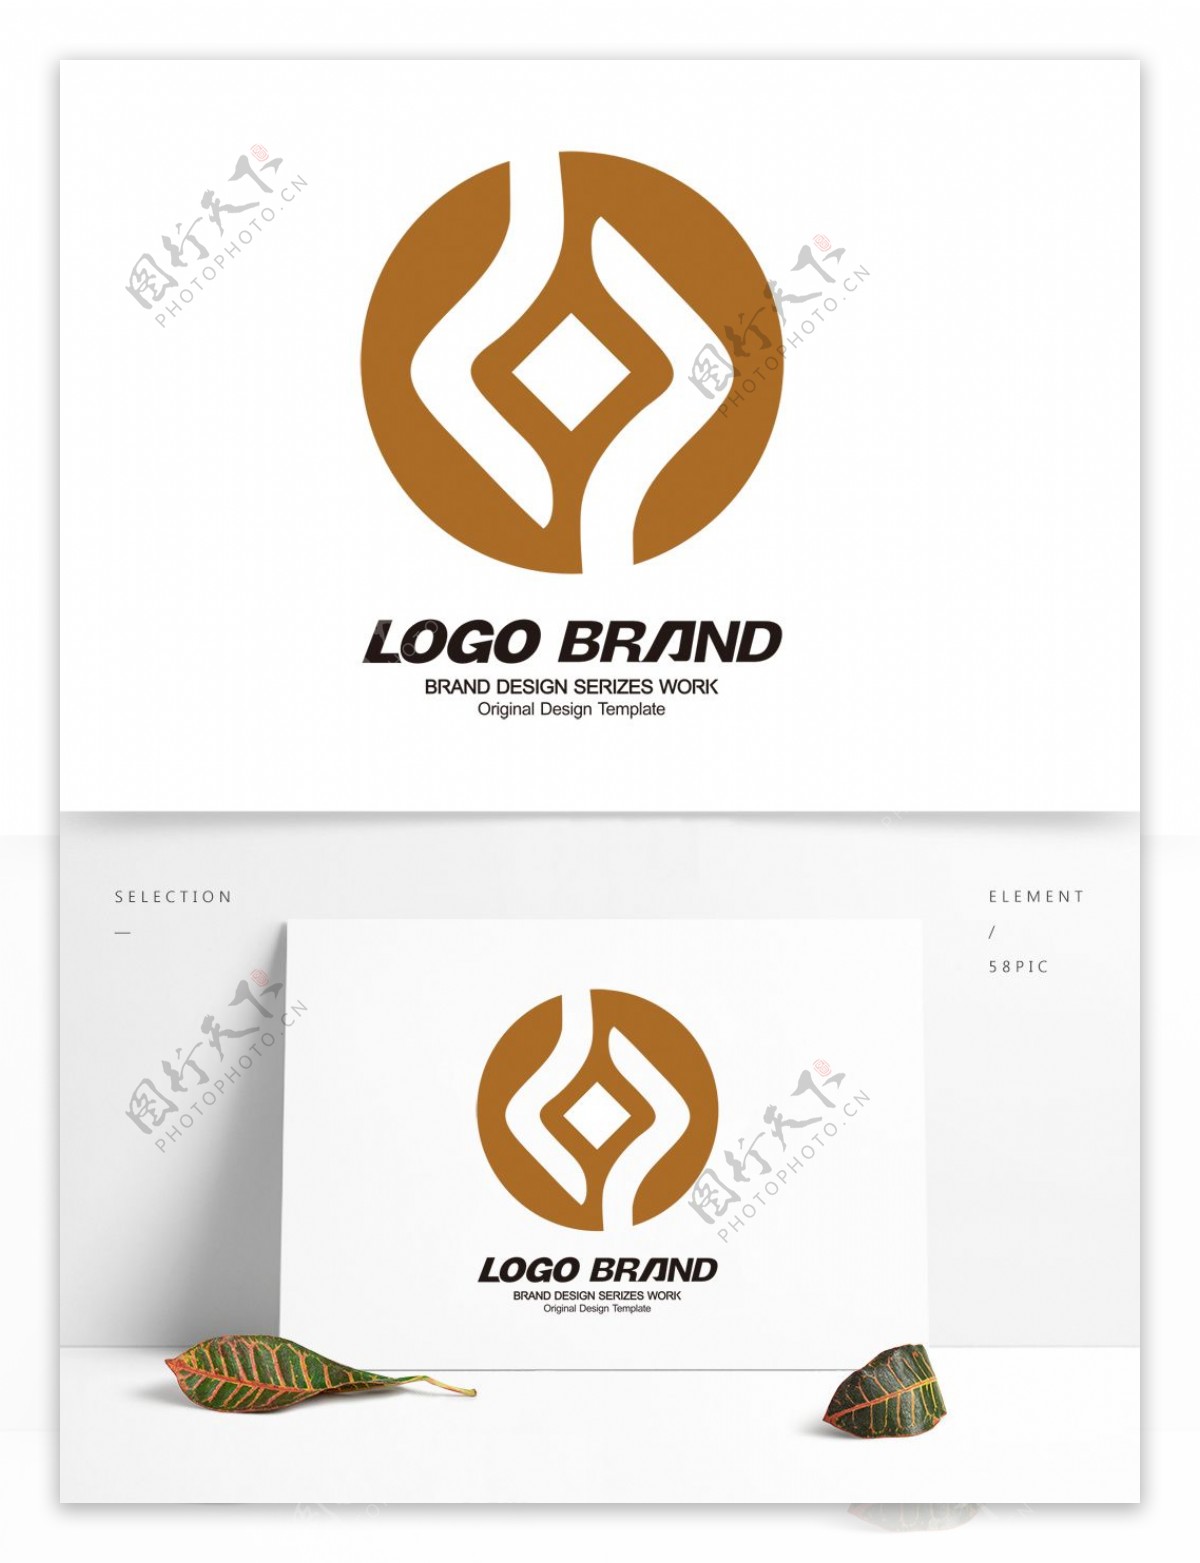 创意金色金融公司LOGO企业标志设计